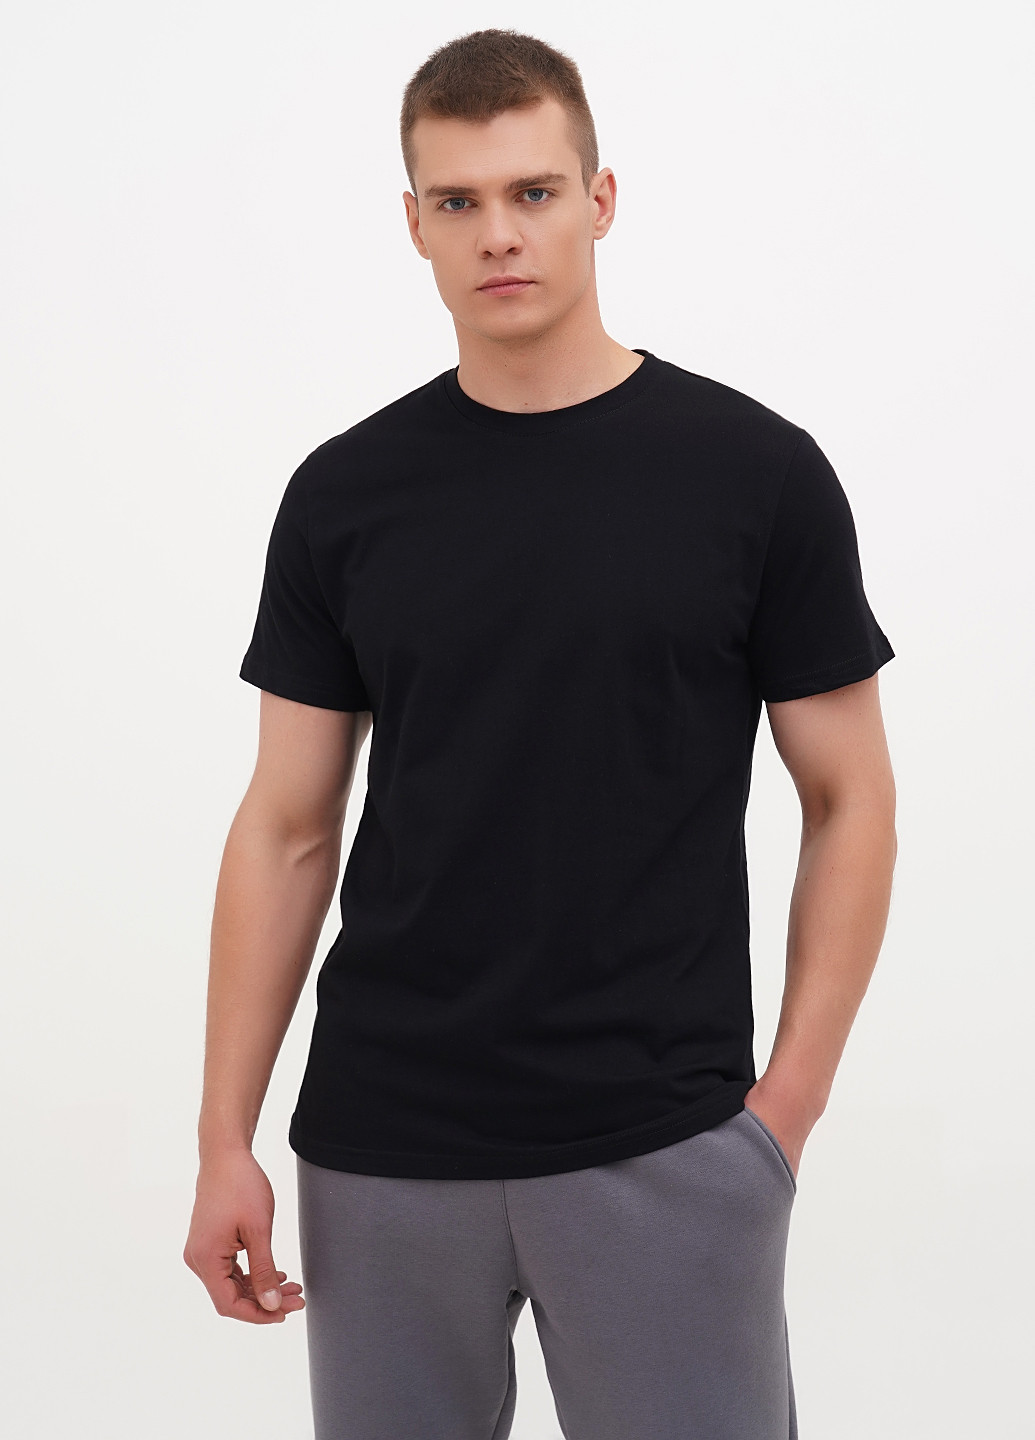 Чорна футболка чоловіча базова KASTA design